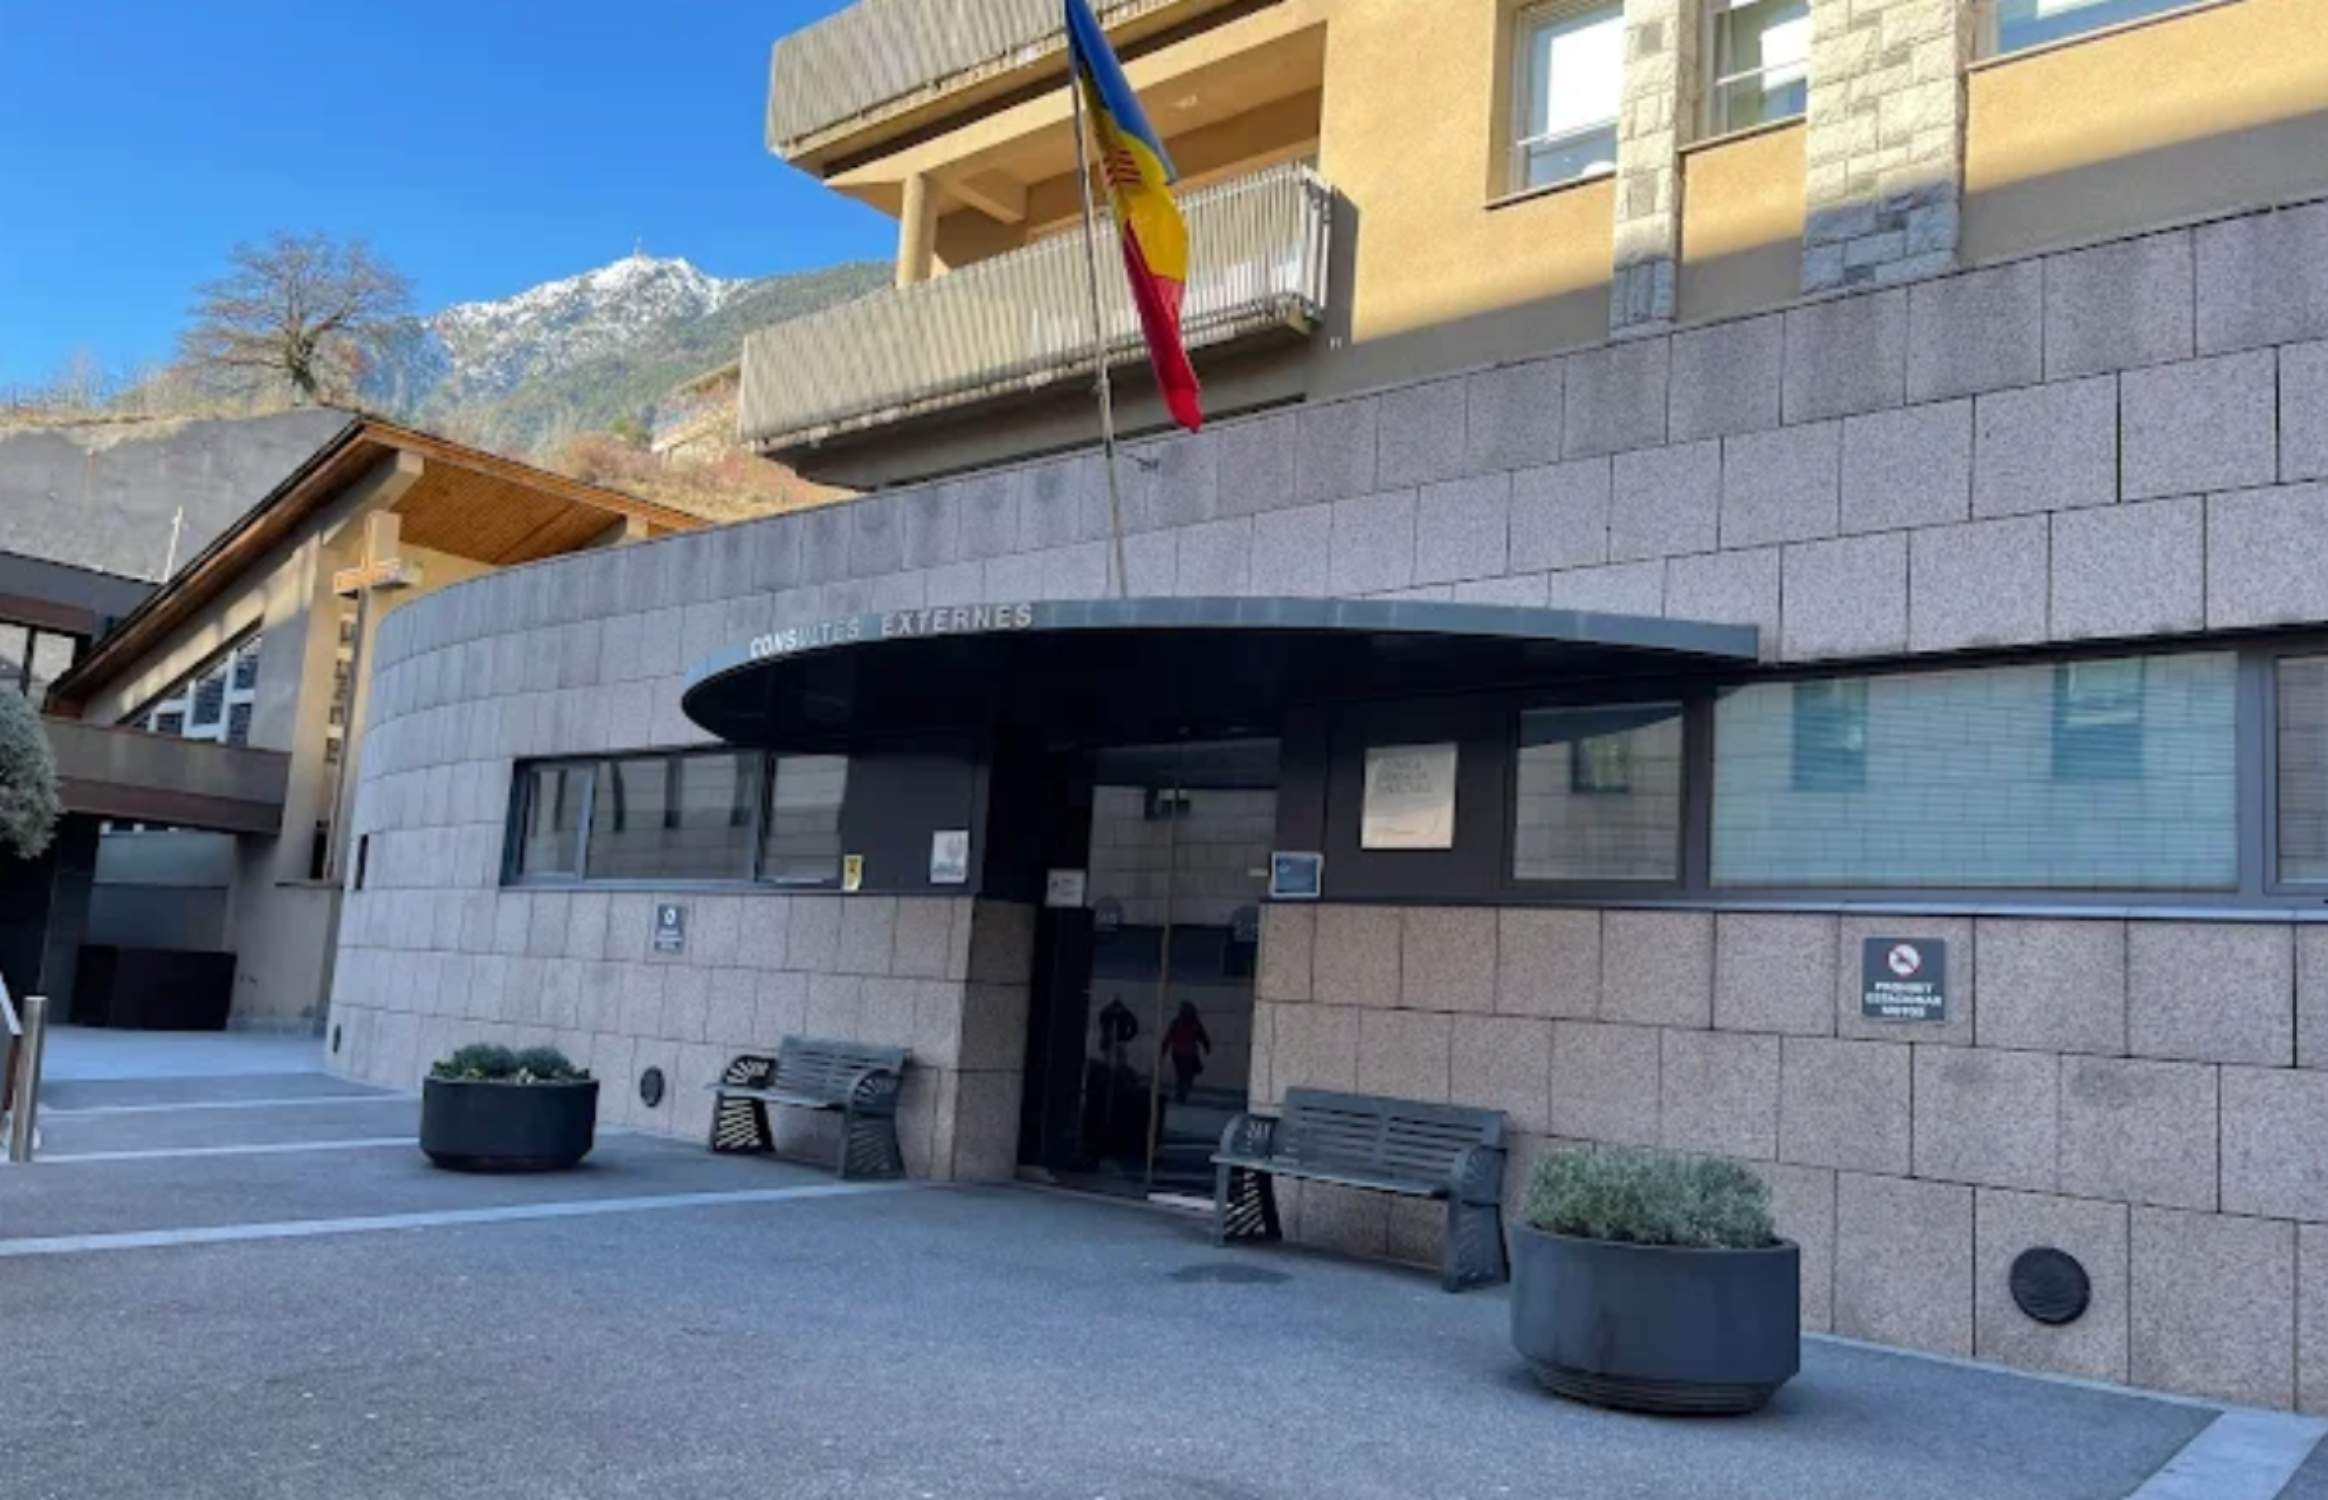 Detingut a Andorra un home català després d'escapar-se de l'hospital vestit de metge i buscat per drogues